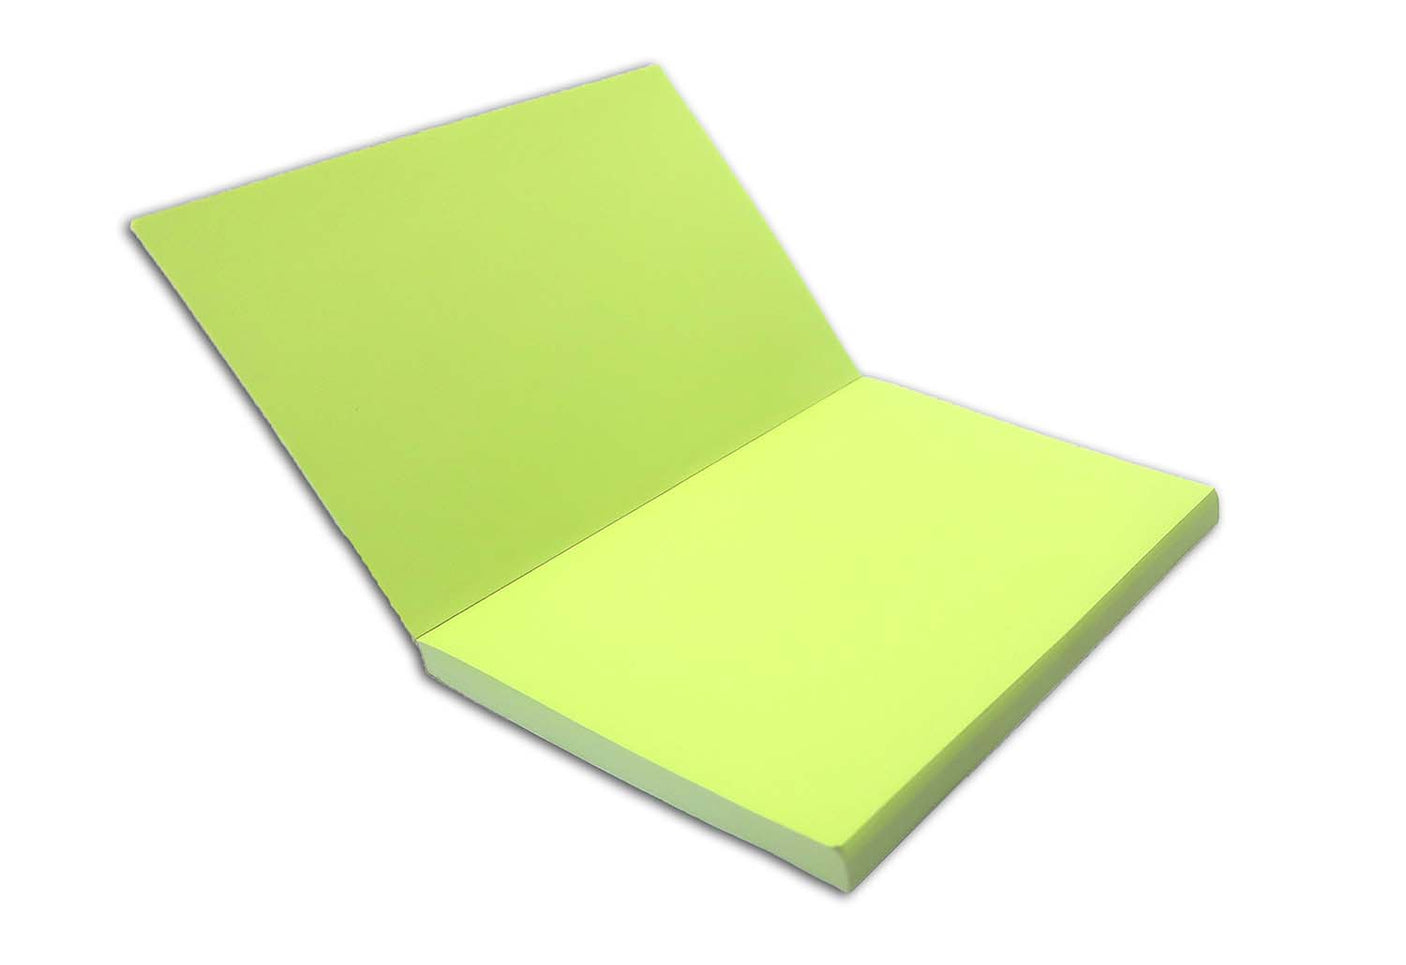 Carnet de note bicolore - Vert